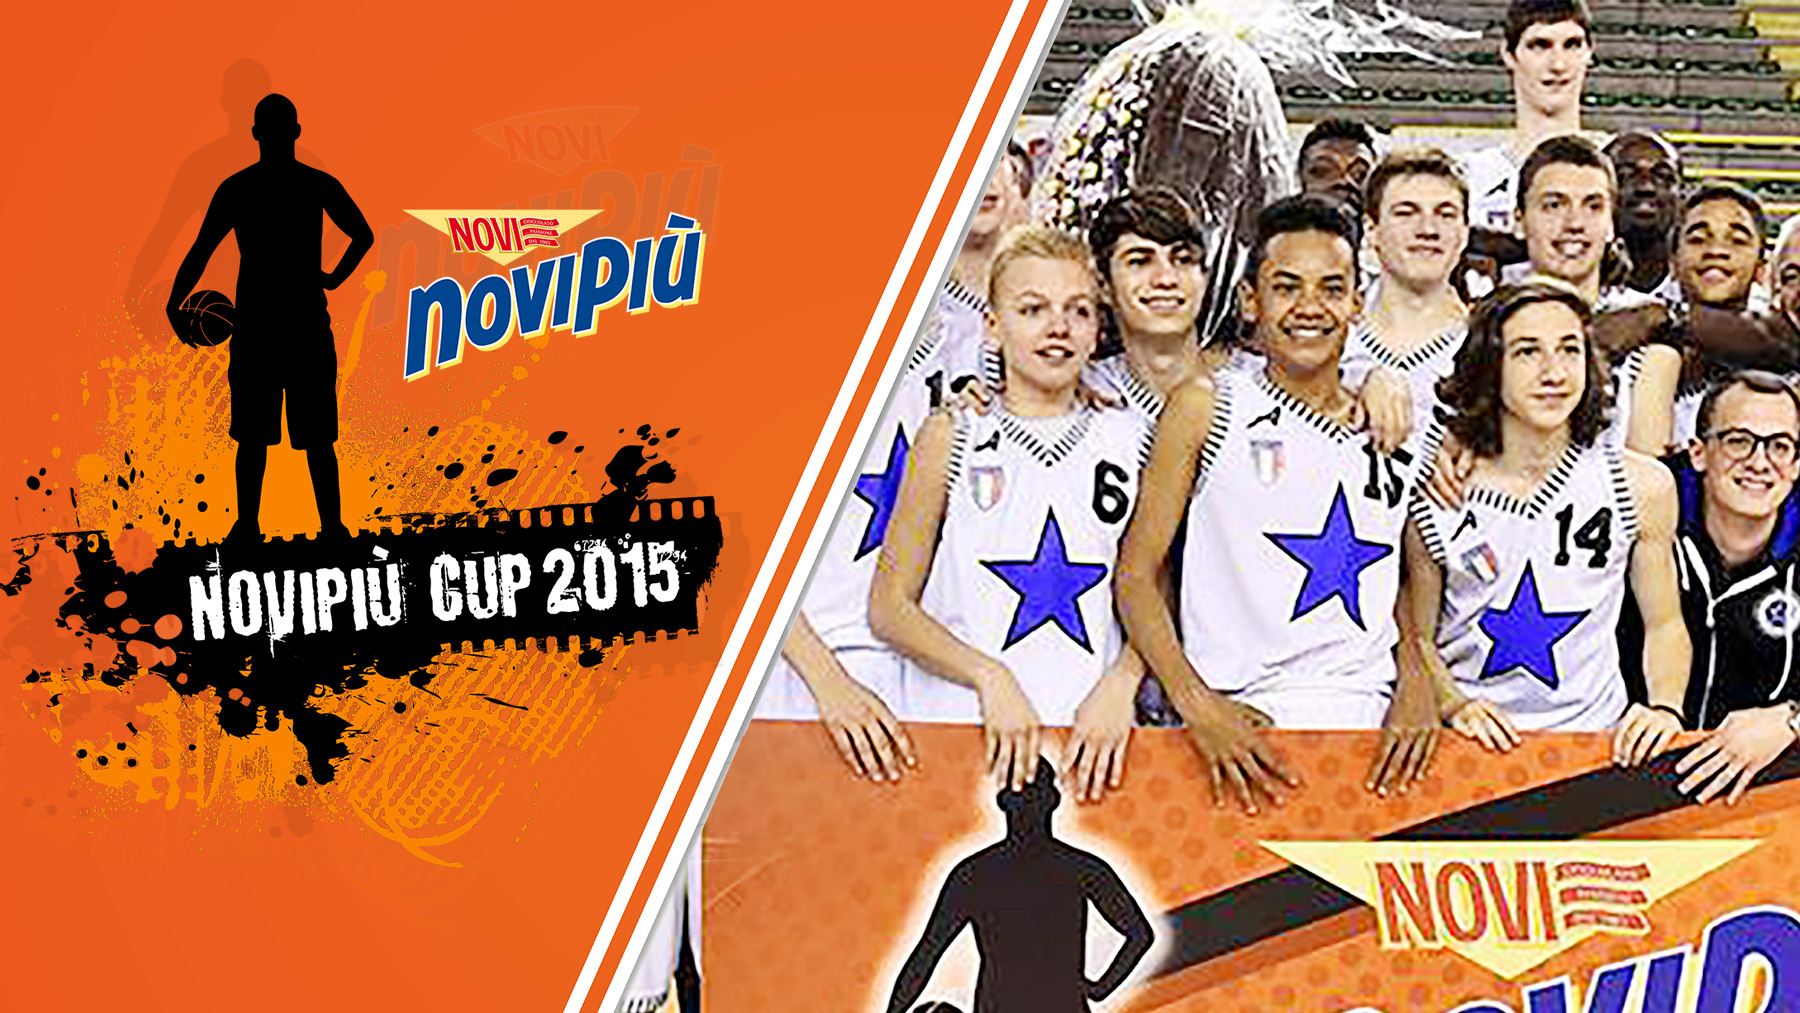 Novipiù Cup 2015